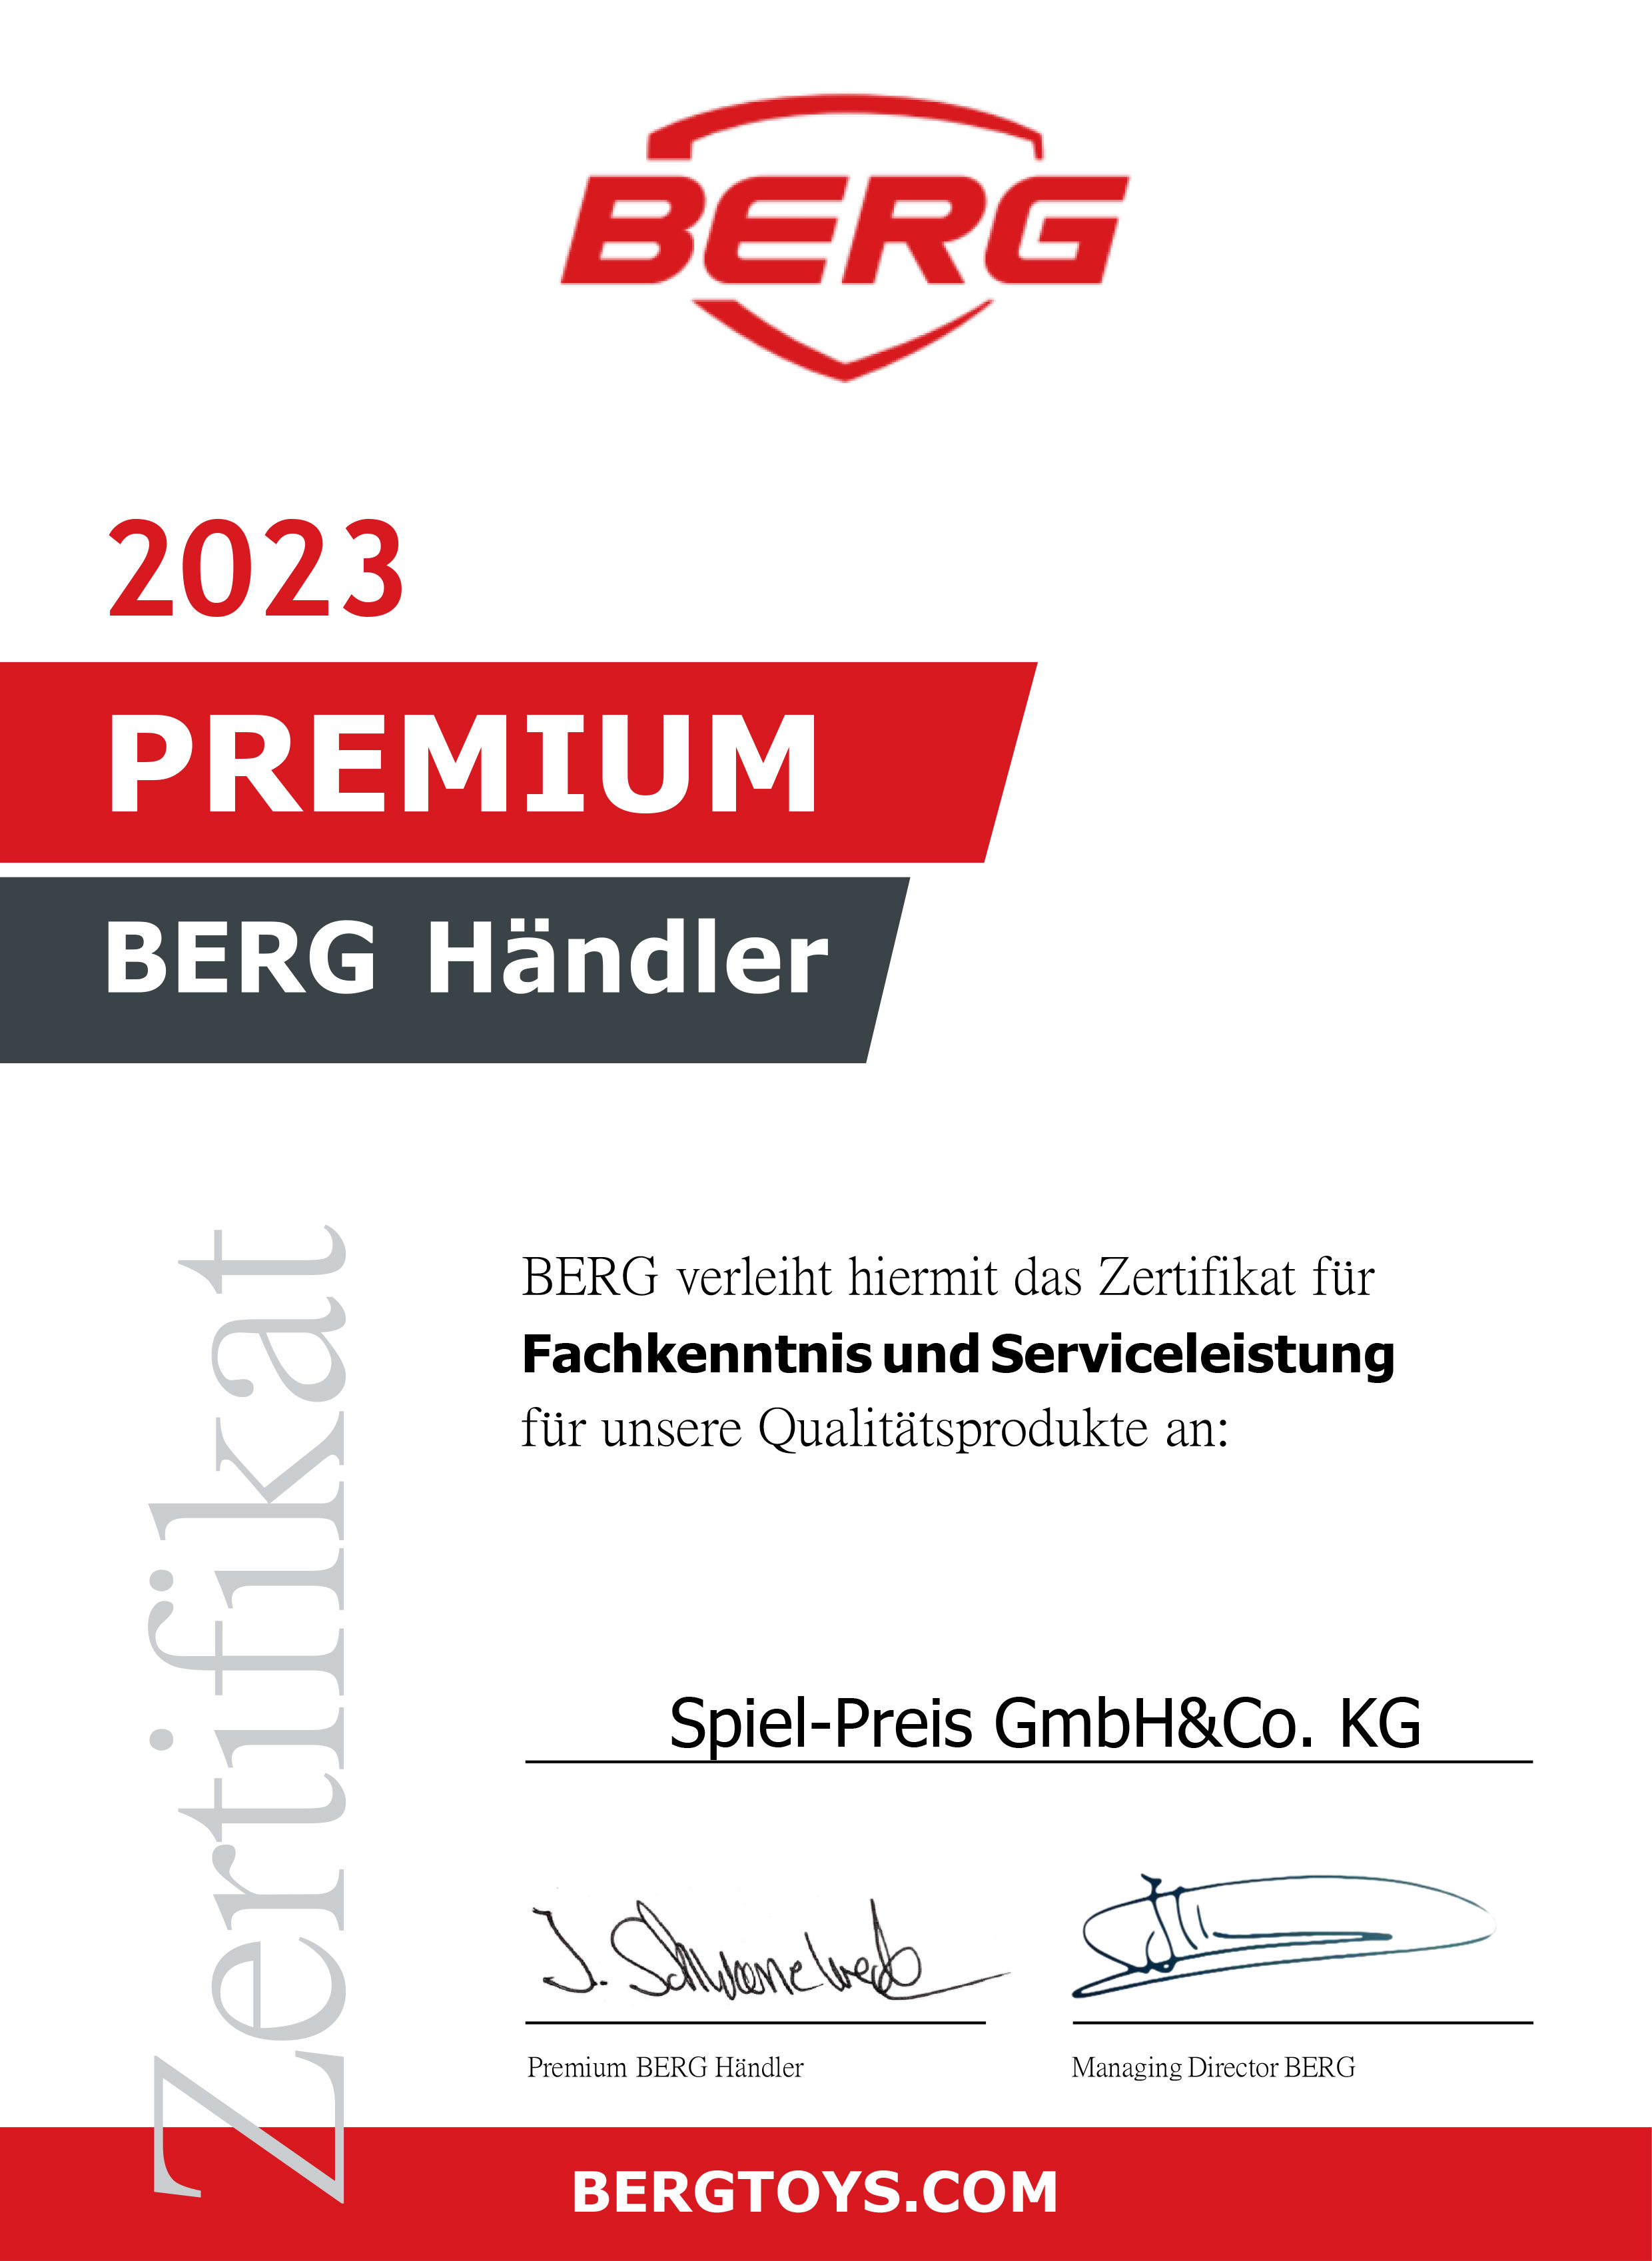 BERG Premium Händler Zertifikat 2021